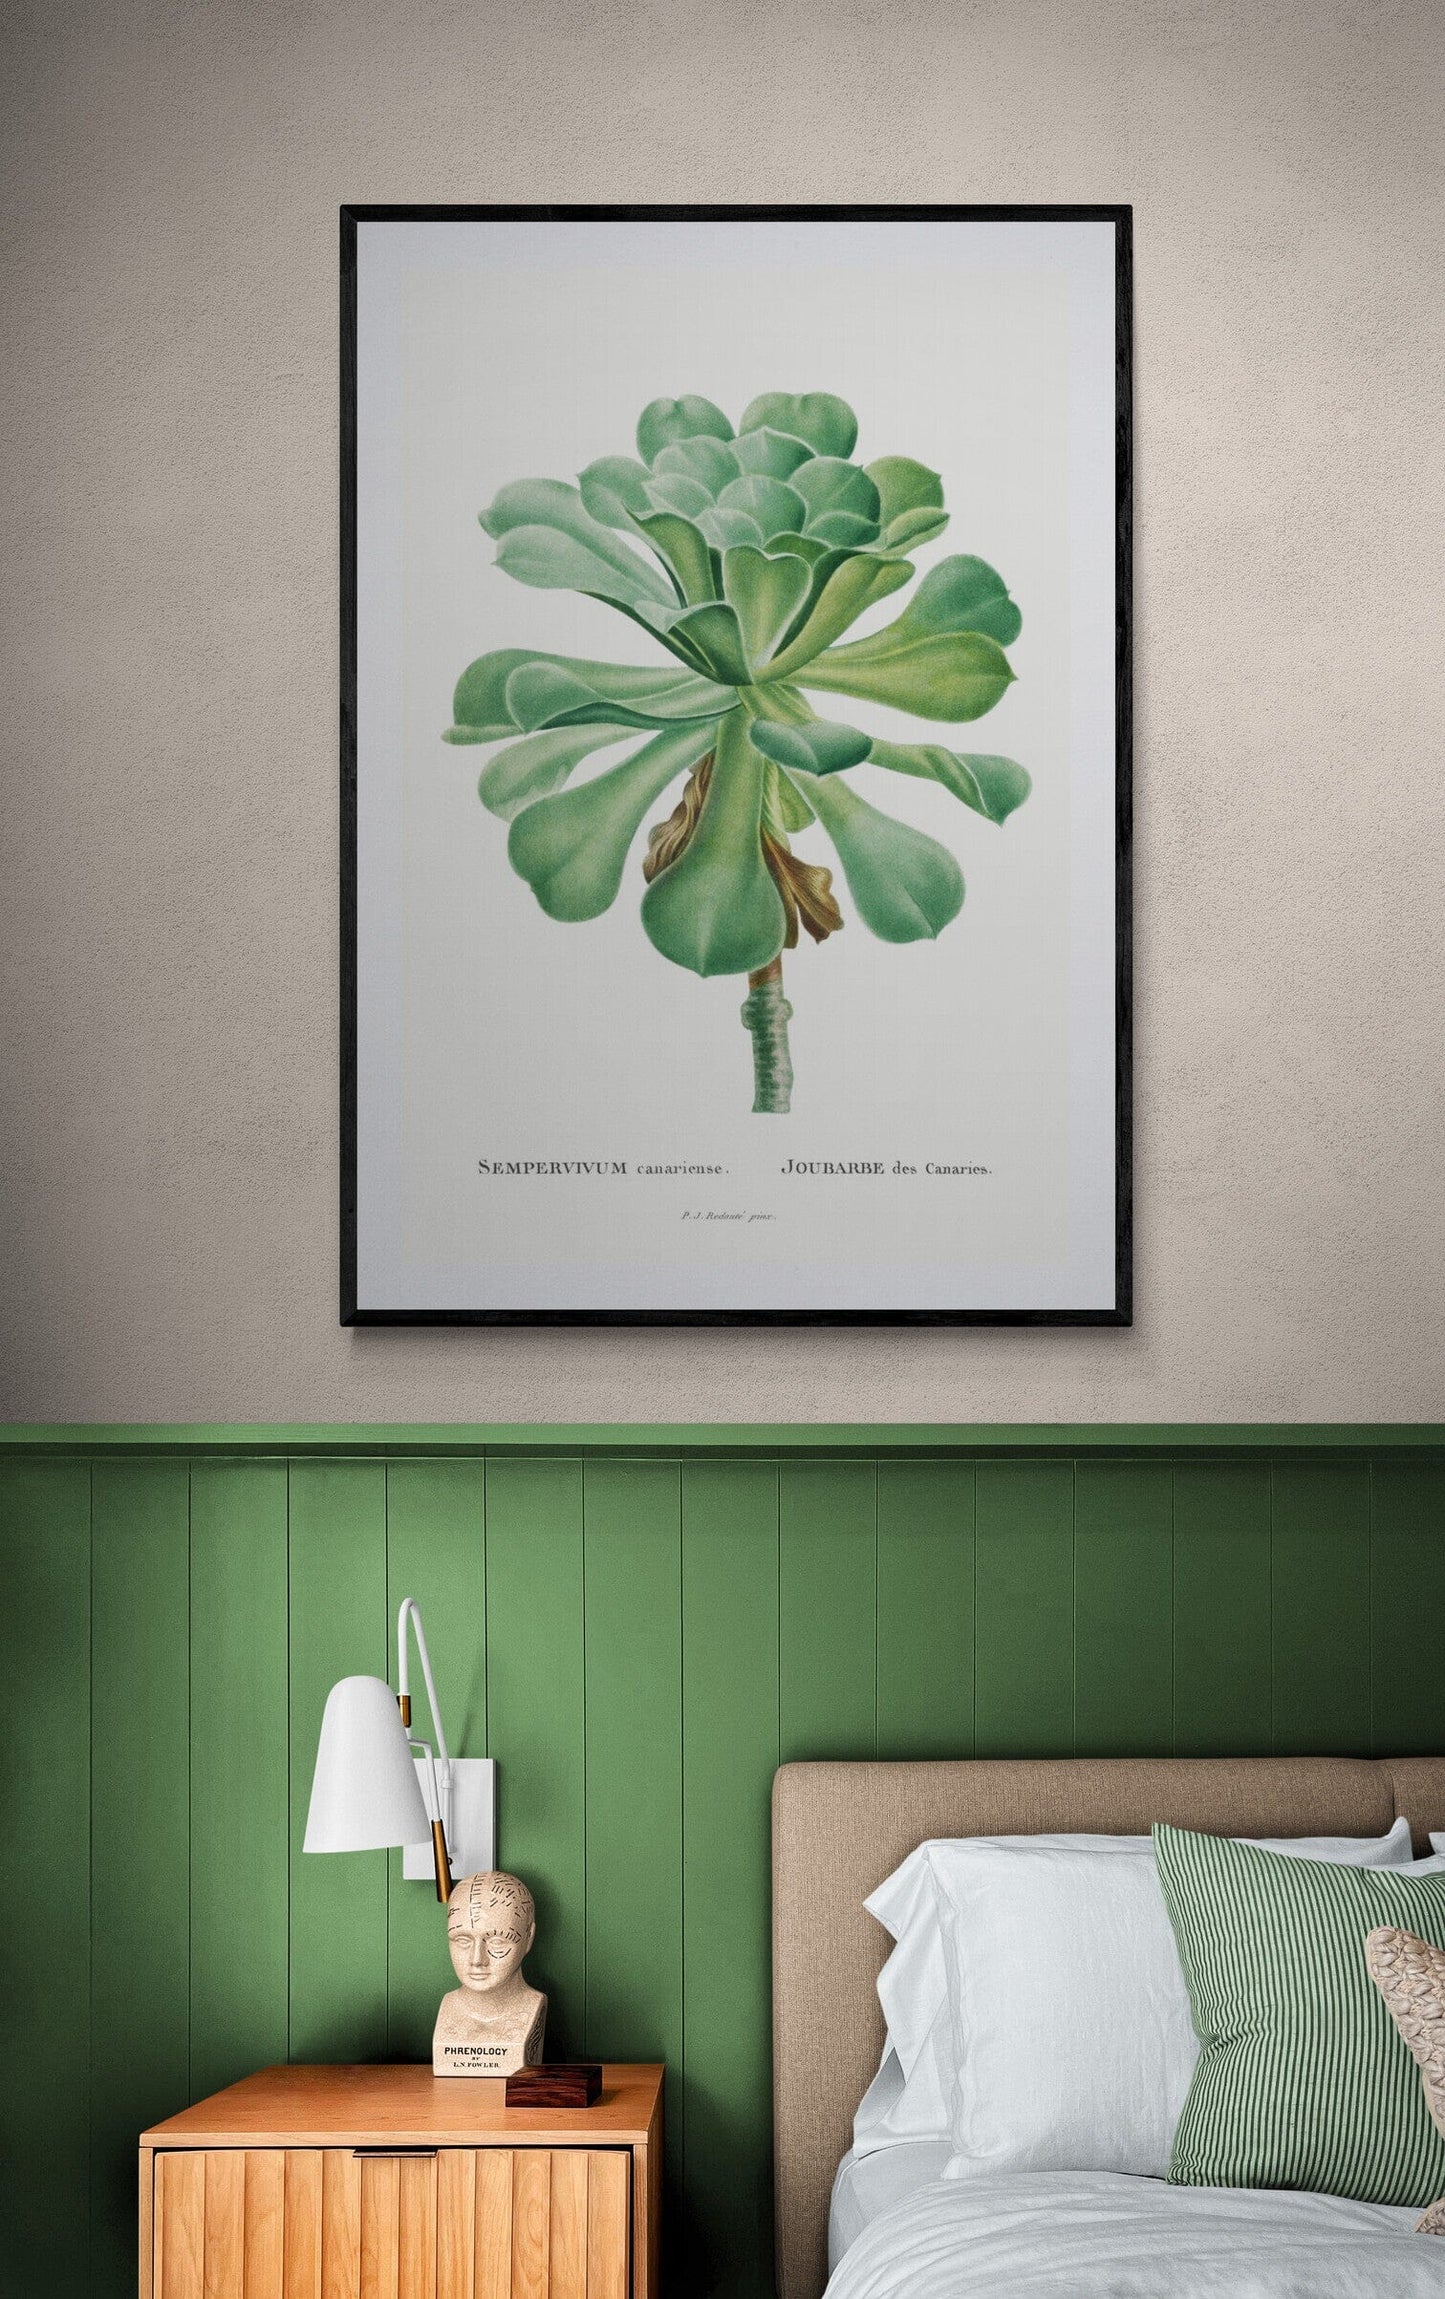 Sempervivum plant (1800s) | Pierre-Joseph Redoute prints Posters, Prints, & Visual Artwork The Trumpet Shop   